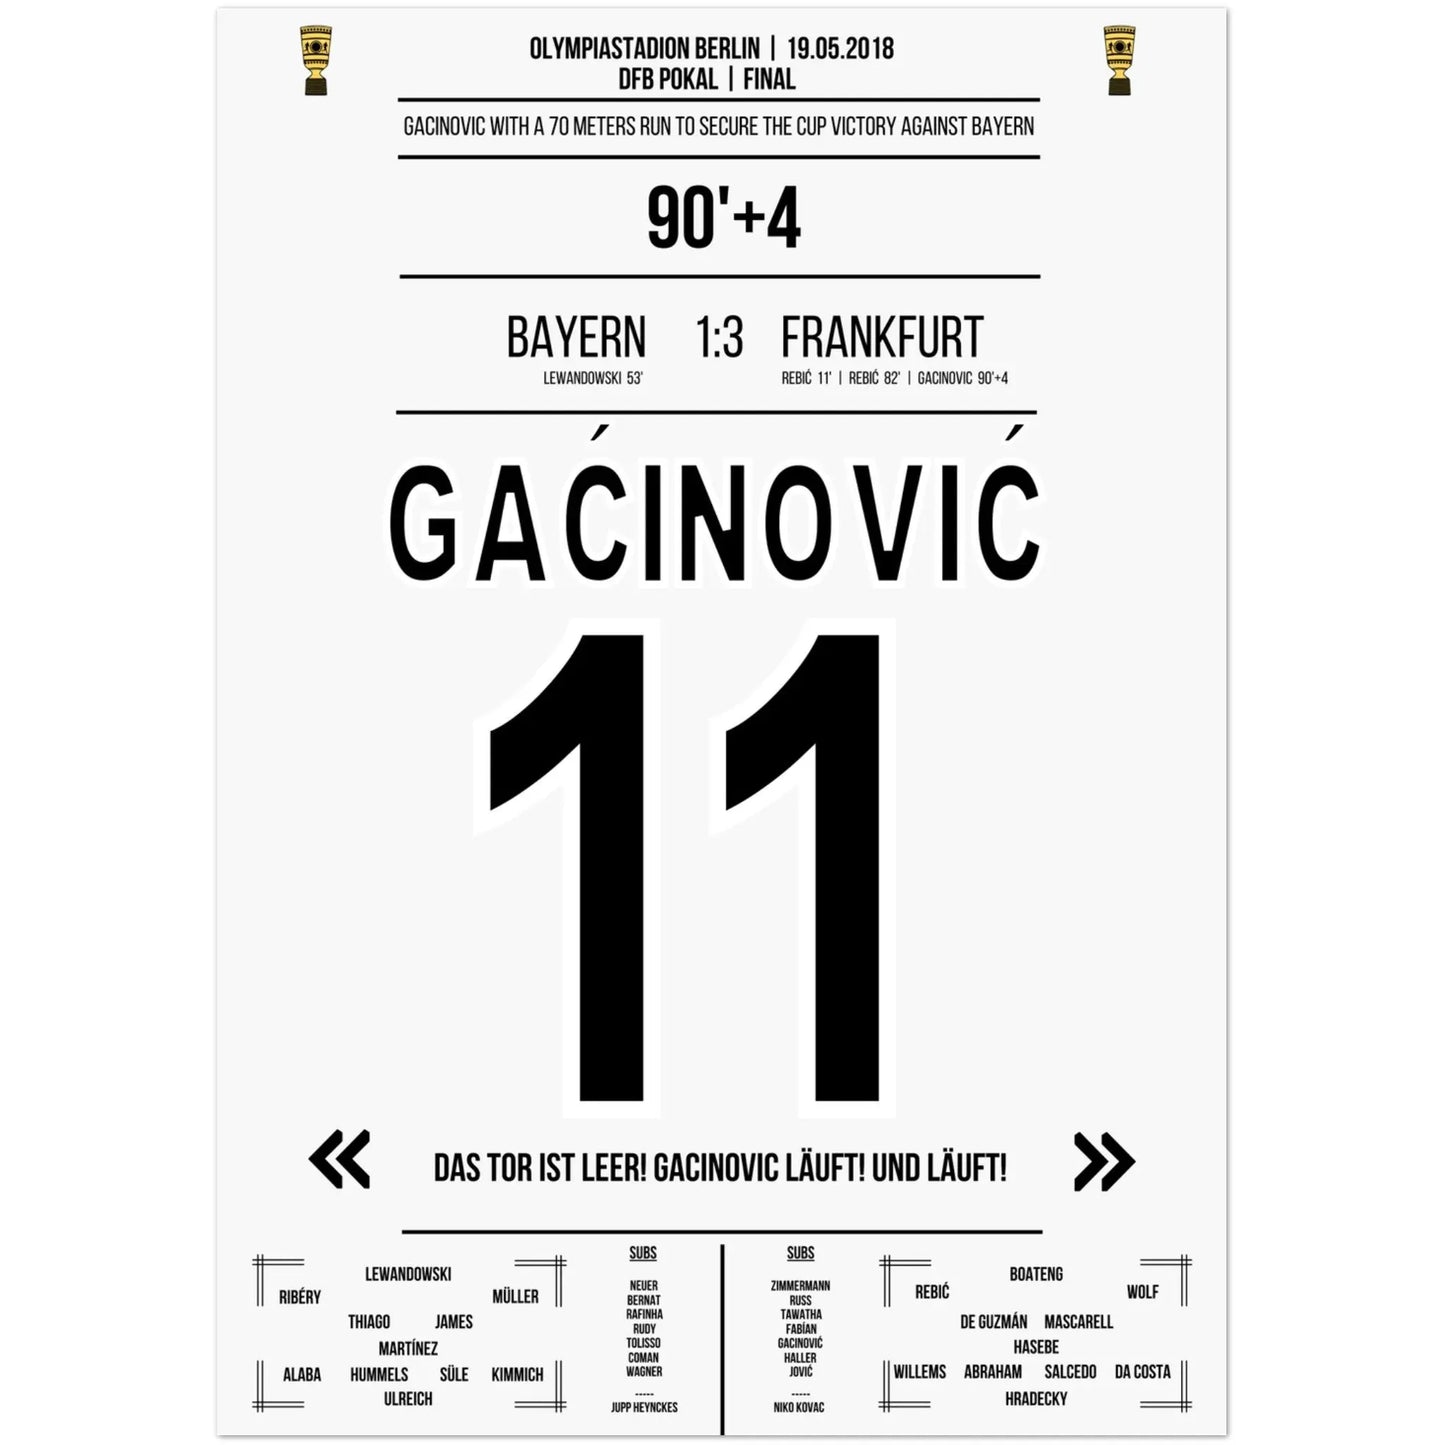 Gacinovic's 70 meter lange run naar de bekerzege tegen Bayern in 2018